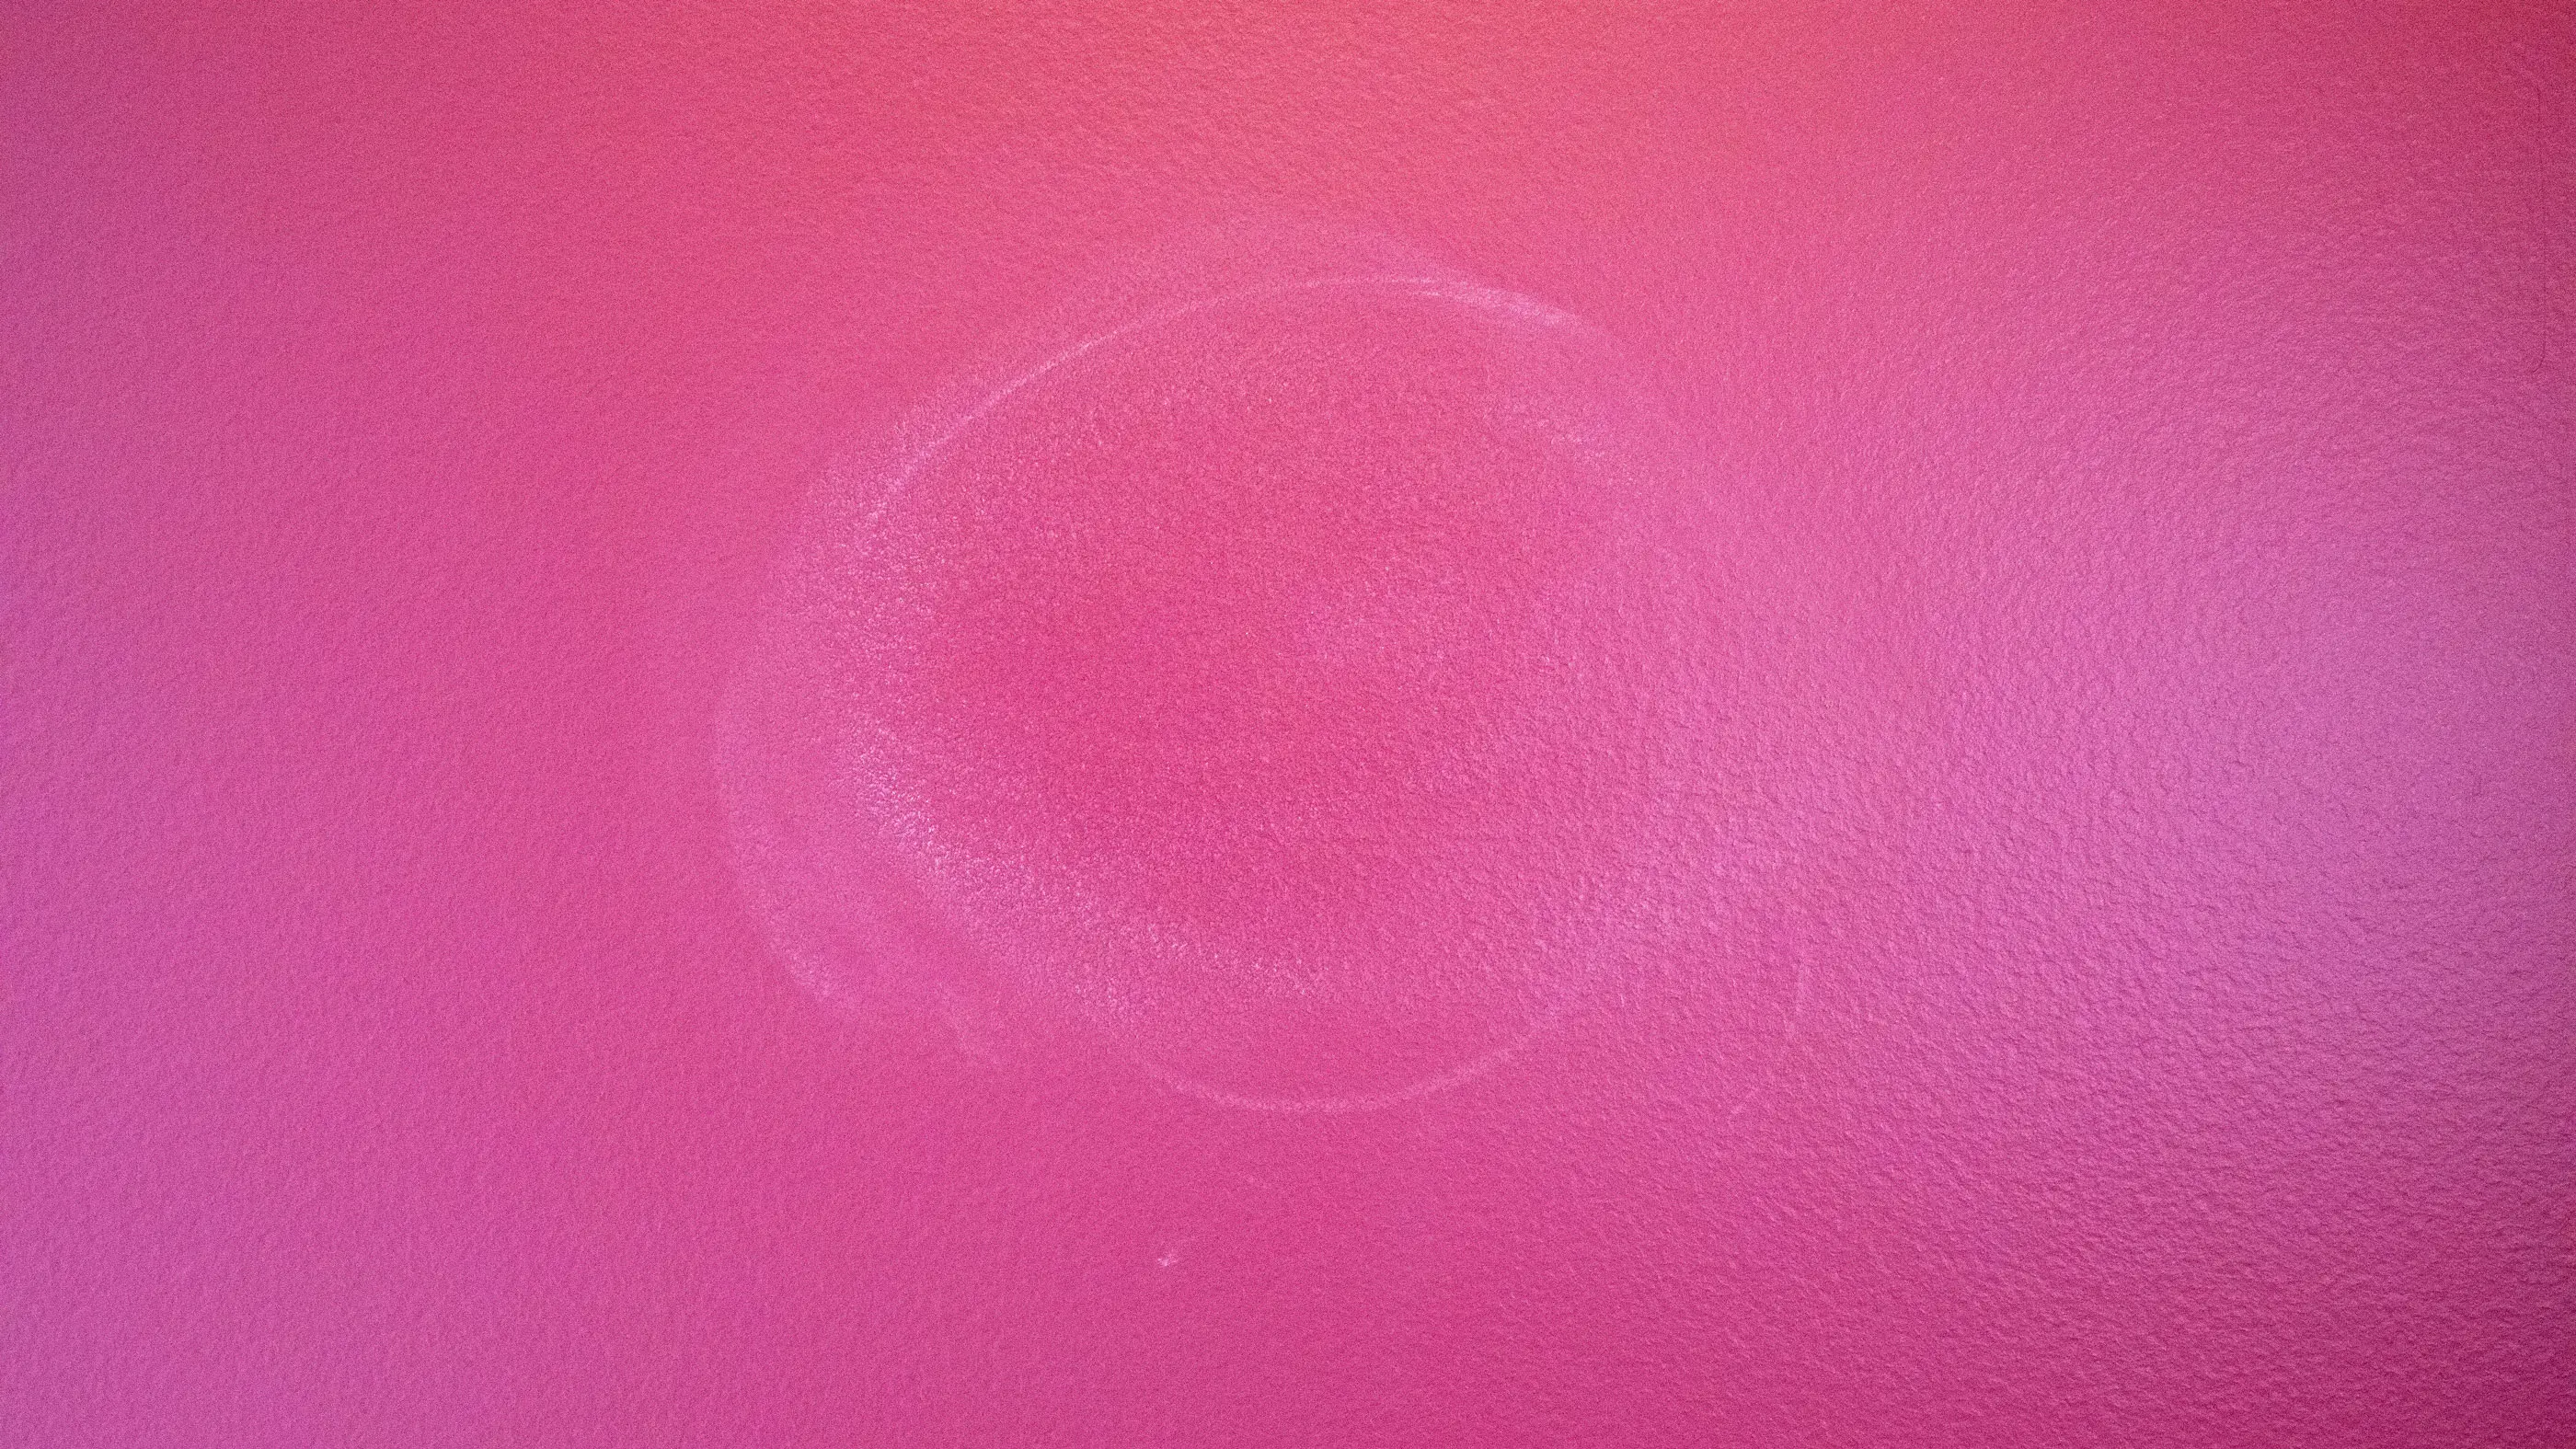 Burnishing mark on pink paint